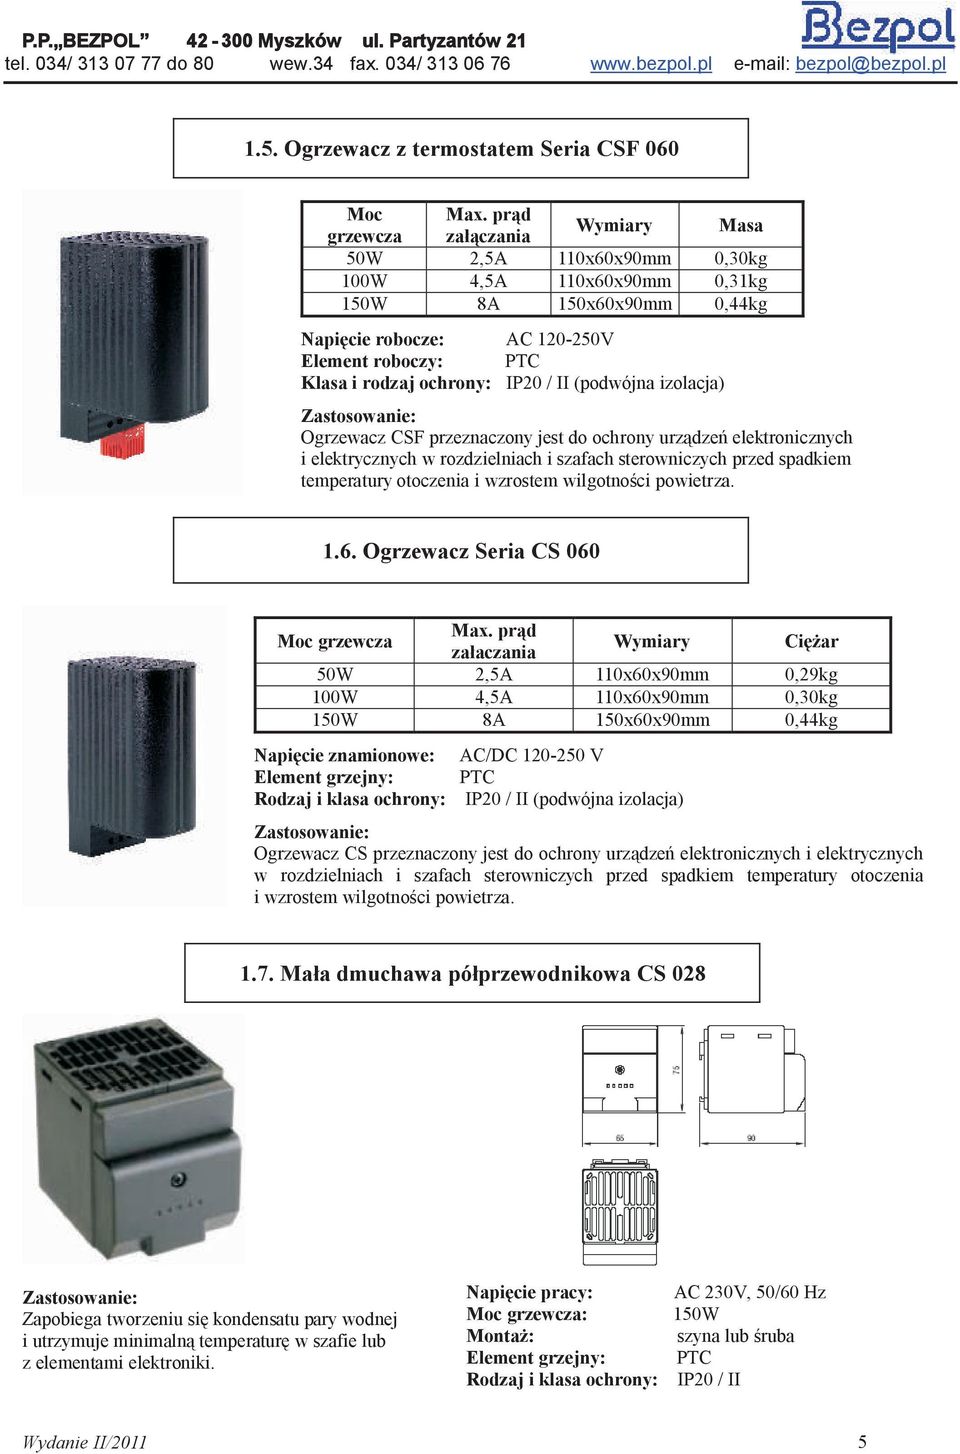 IP20 / II (podwójna izolacja) Zastosowanie: Ogrzewacz CSF przeznaczony jest do ochrony urządzeń elektronicznych i elektrycznych w rozdzielniach i szafach sterowniczych przed spadkiem temperatury